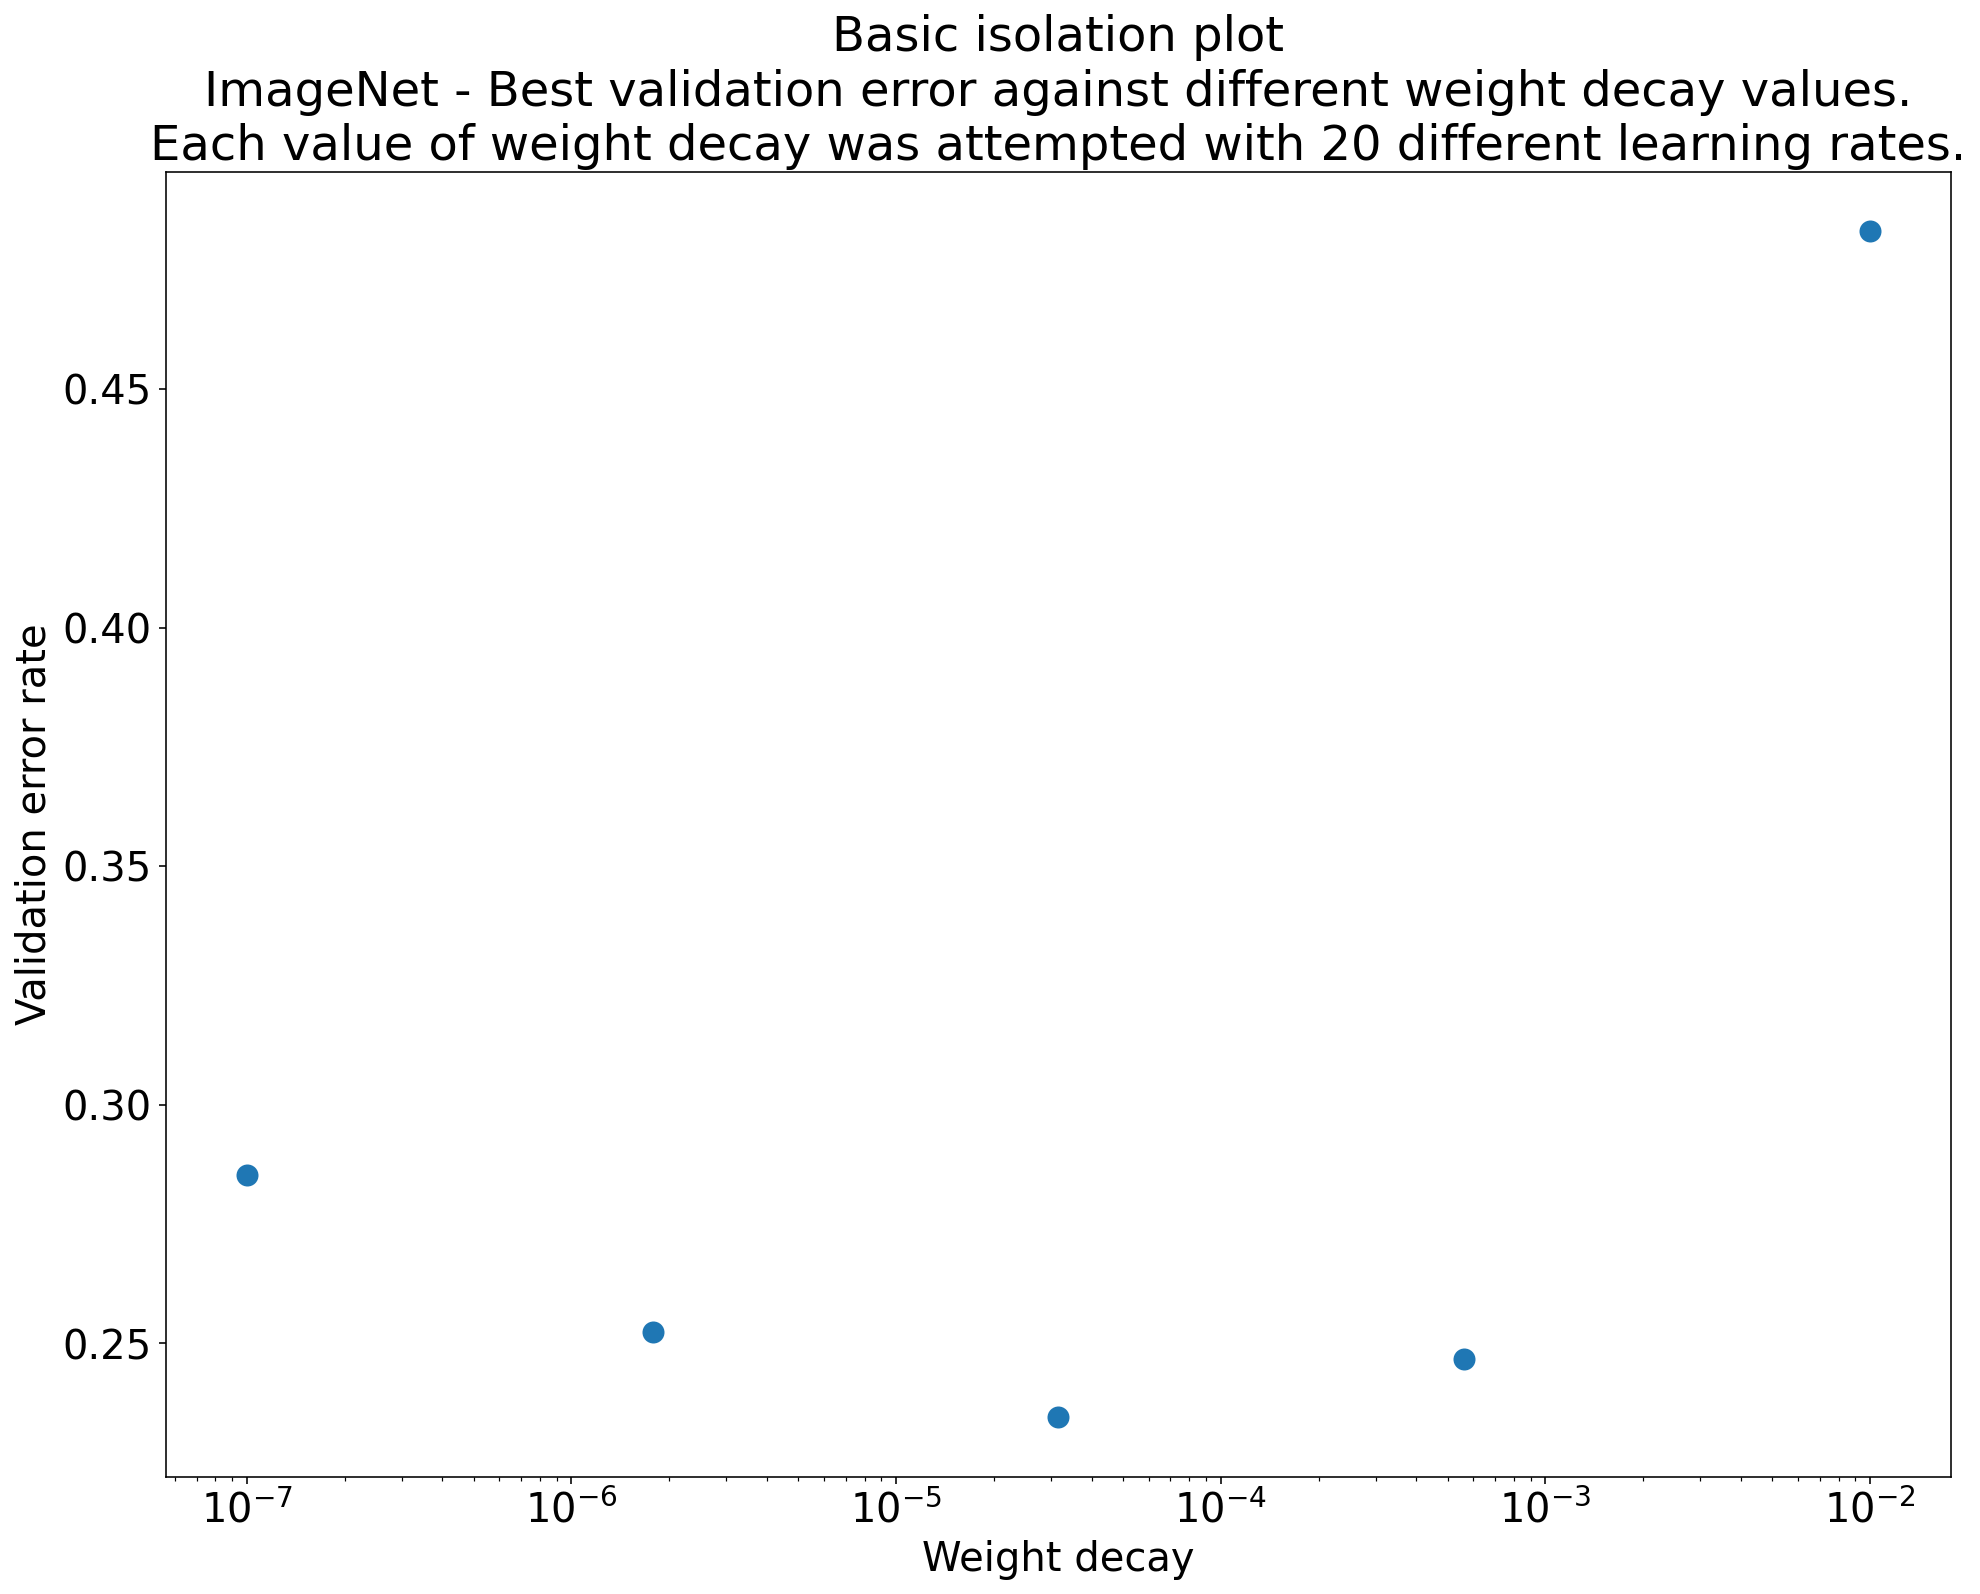 חלקת בידוד שחוקרת את הערך הגבוה ביותר של דעיכה במשקל עבור ResNet-50, שעבר הכשרה ב-ImageNet. במקרה הזה, שיעור השגיאות הנמוך ביותר לאימות הוא מתי הדעיכה במשקל היא בערך 0.00005.